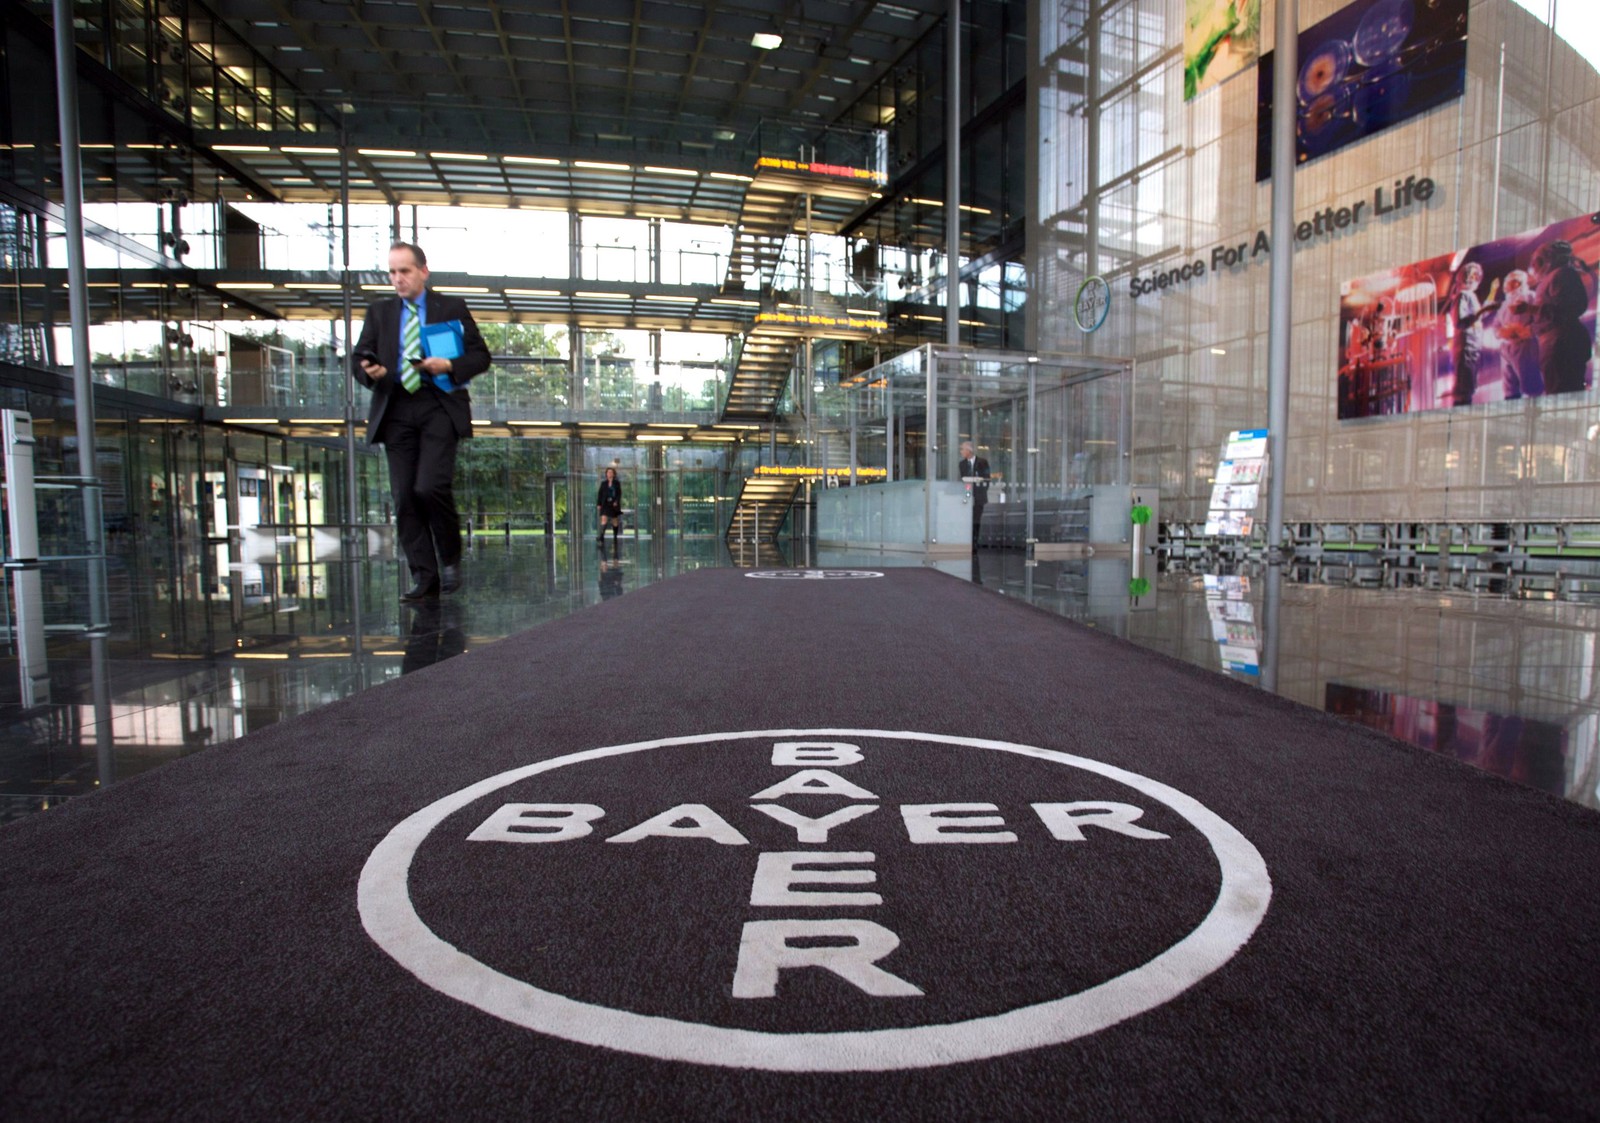 Bayer: multinacional química alemã nasceu em 1863